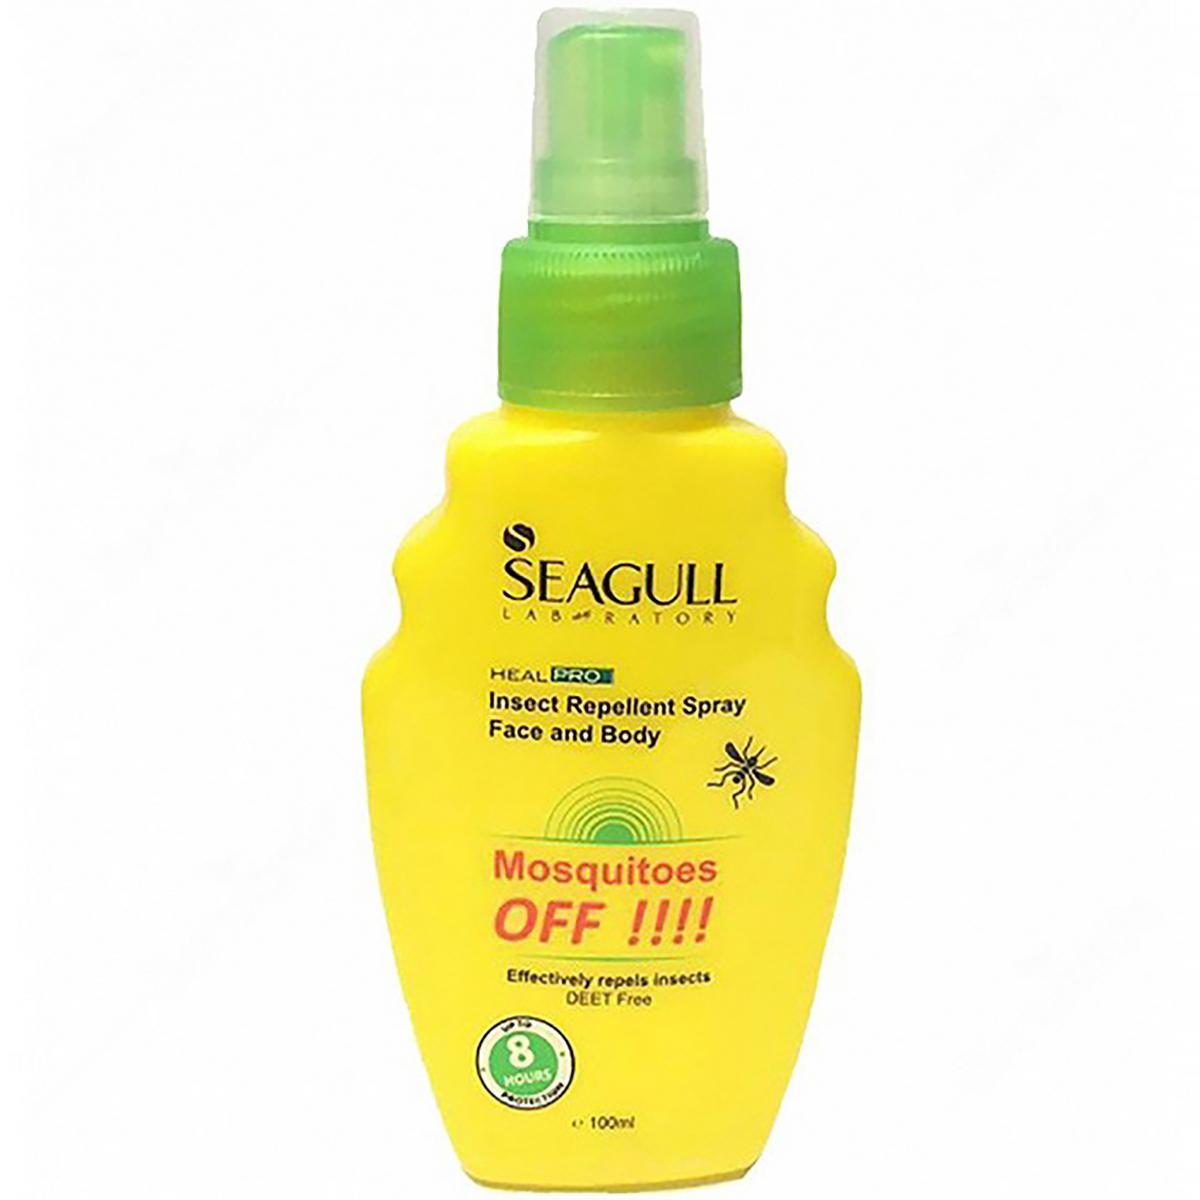 اسپری دافع حشرات - seagull insect repellent spray face and body